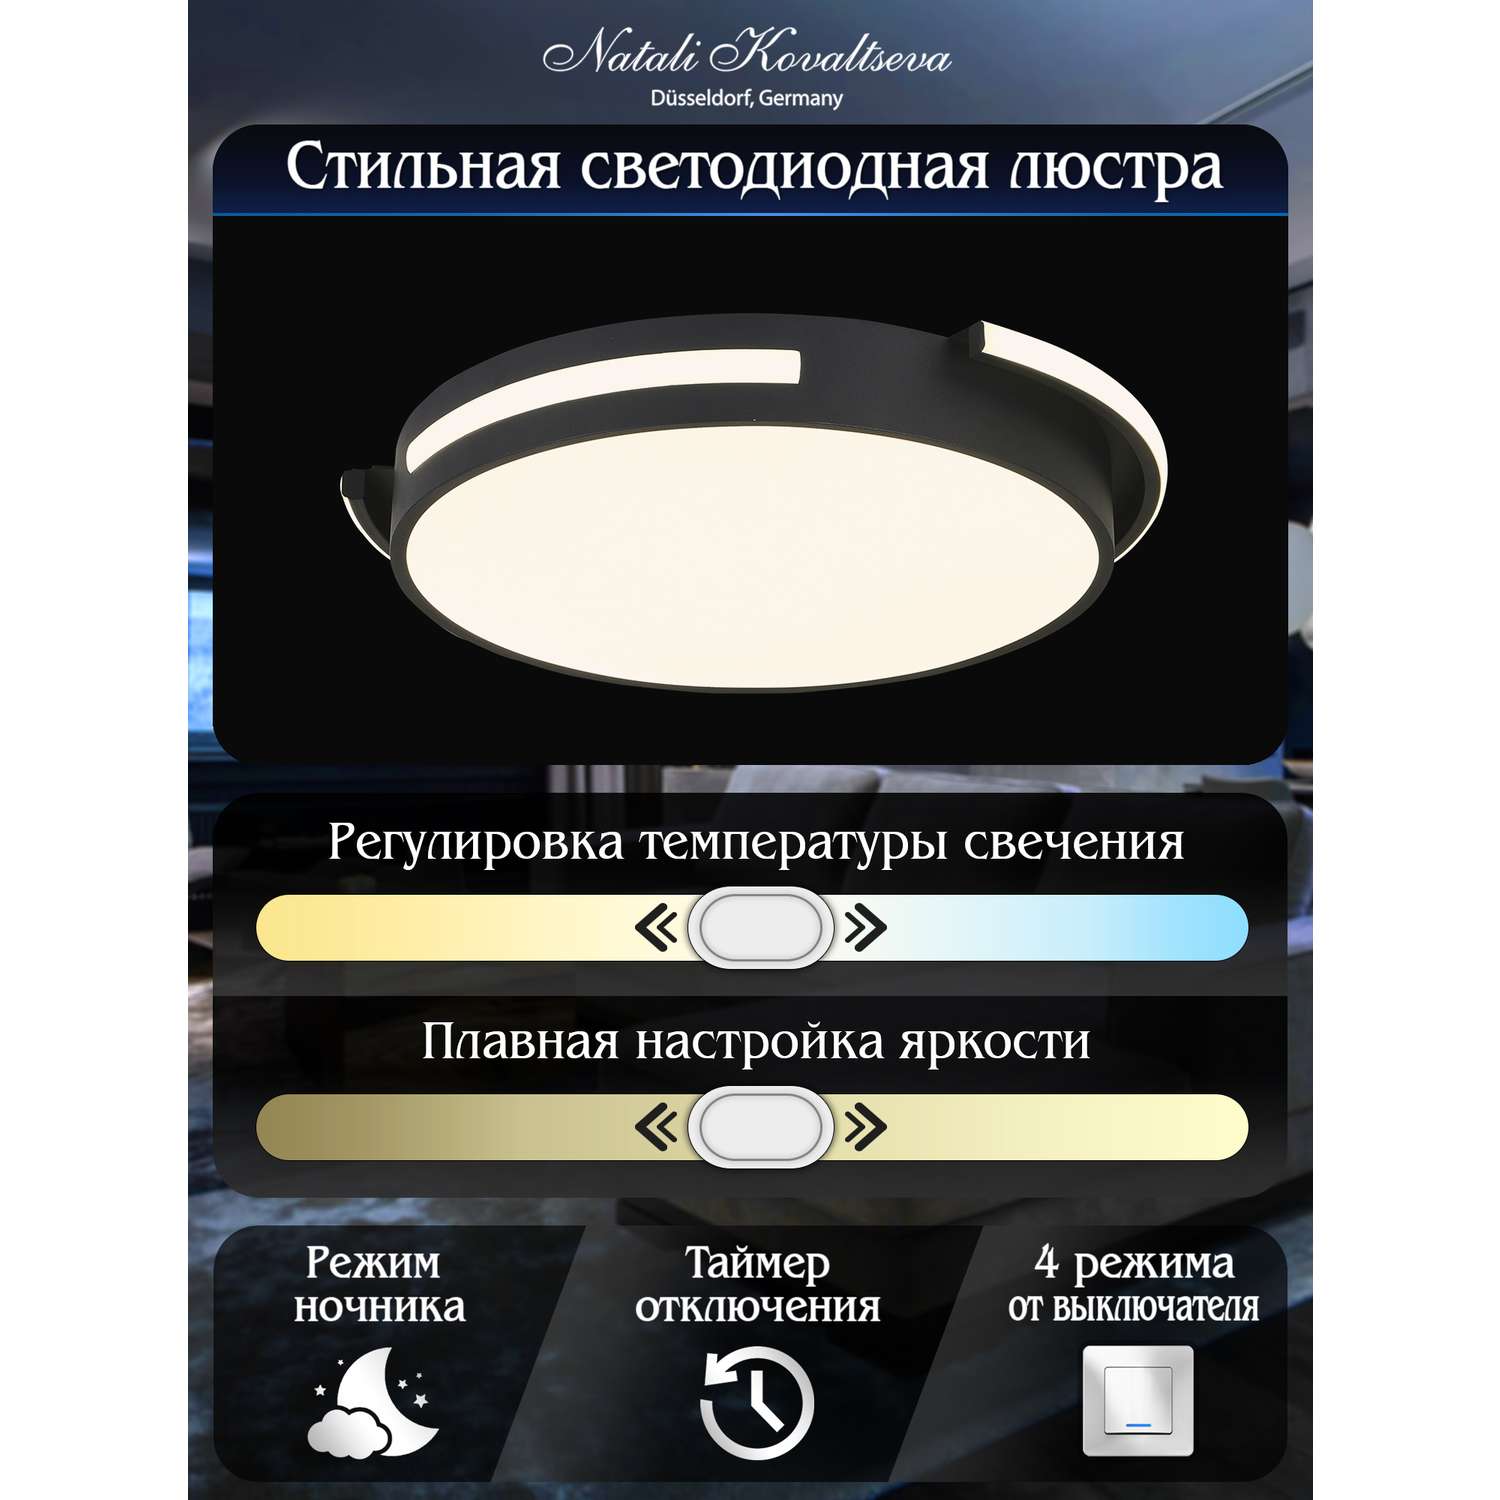 Светодиодный светильник NATALI KOVALTSEVA люстра 100W чёрный LED - фото 3